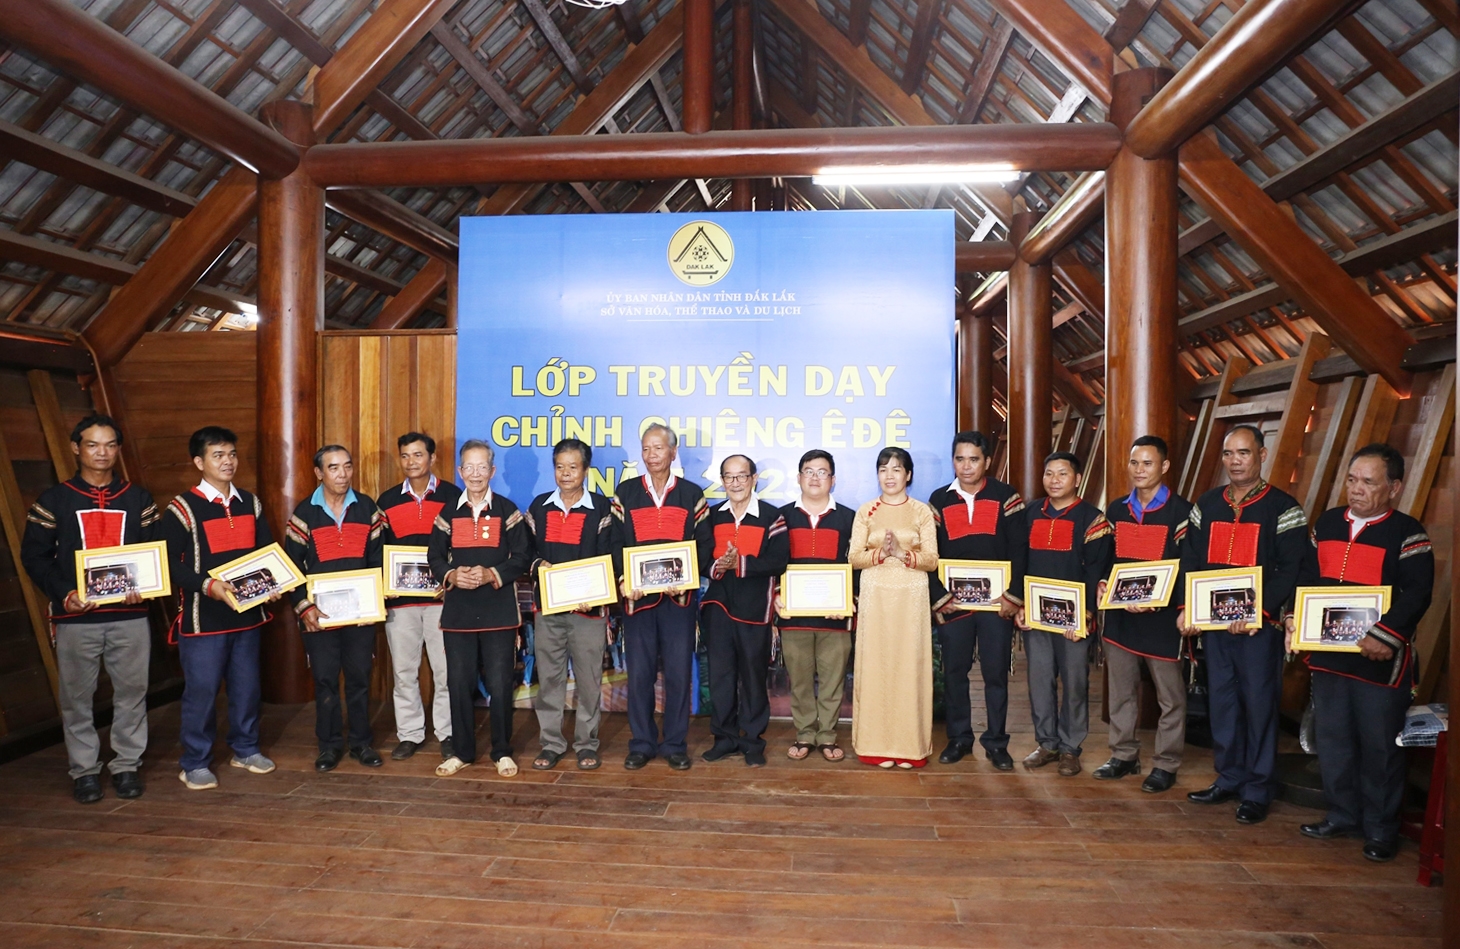 Phó Giám đốc Sở VHTT&DL tỉnh Đắk Lắk Nguyễn Thụy Phương Hiếu trao Giấy chứng nhận cho các học viên